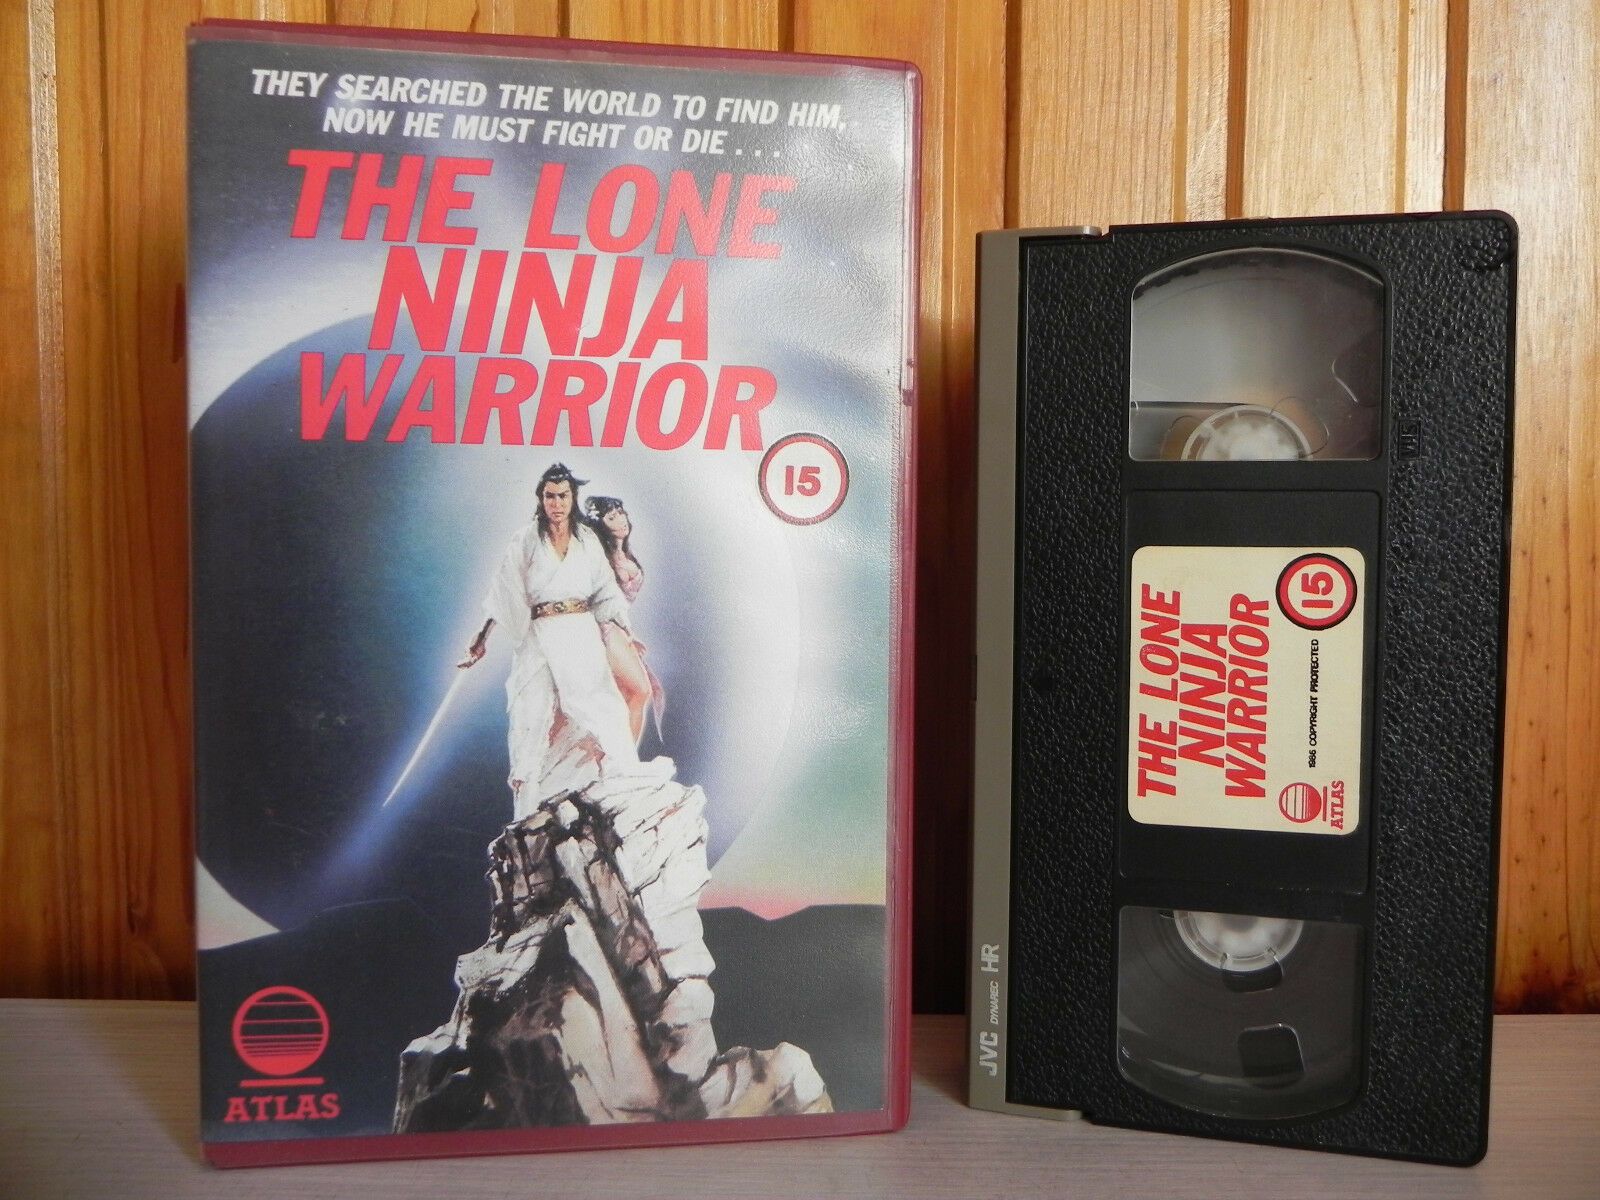 Lone Ninja Warrior - Atlas Big Box - Chen Hsing - Tien Peng - Pre-Cert - Pal VHS-